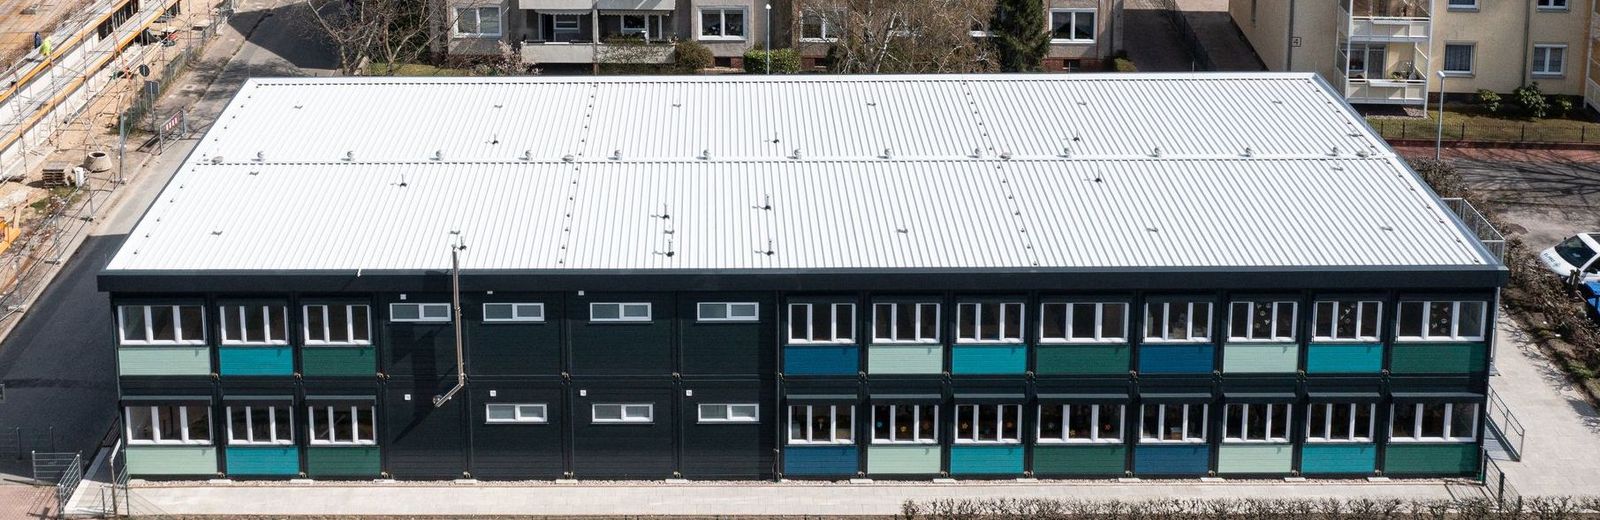 Neues Modul-Gebäude für die Regenbogenschule in Seelze